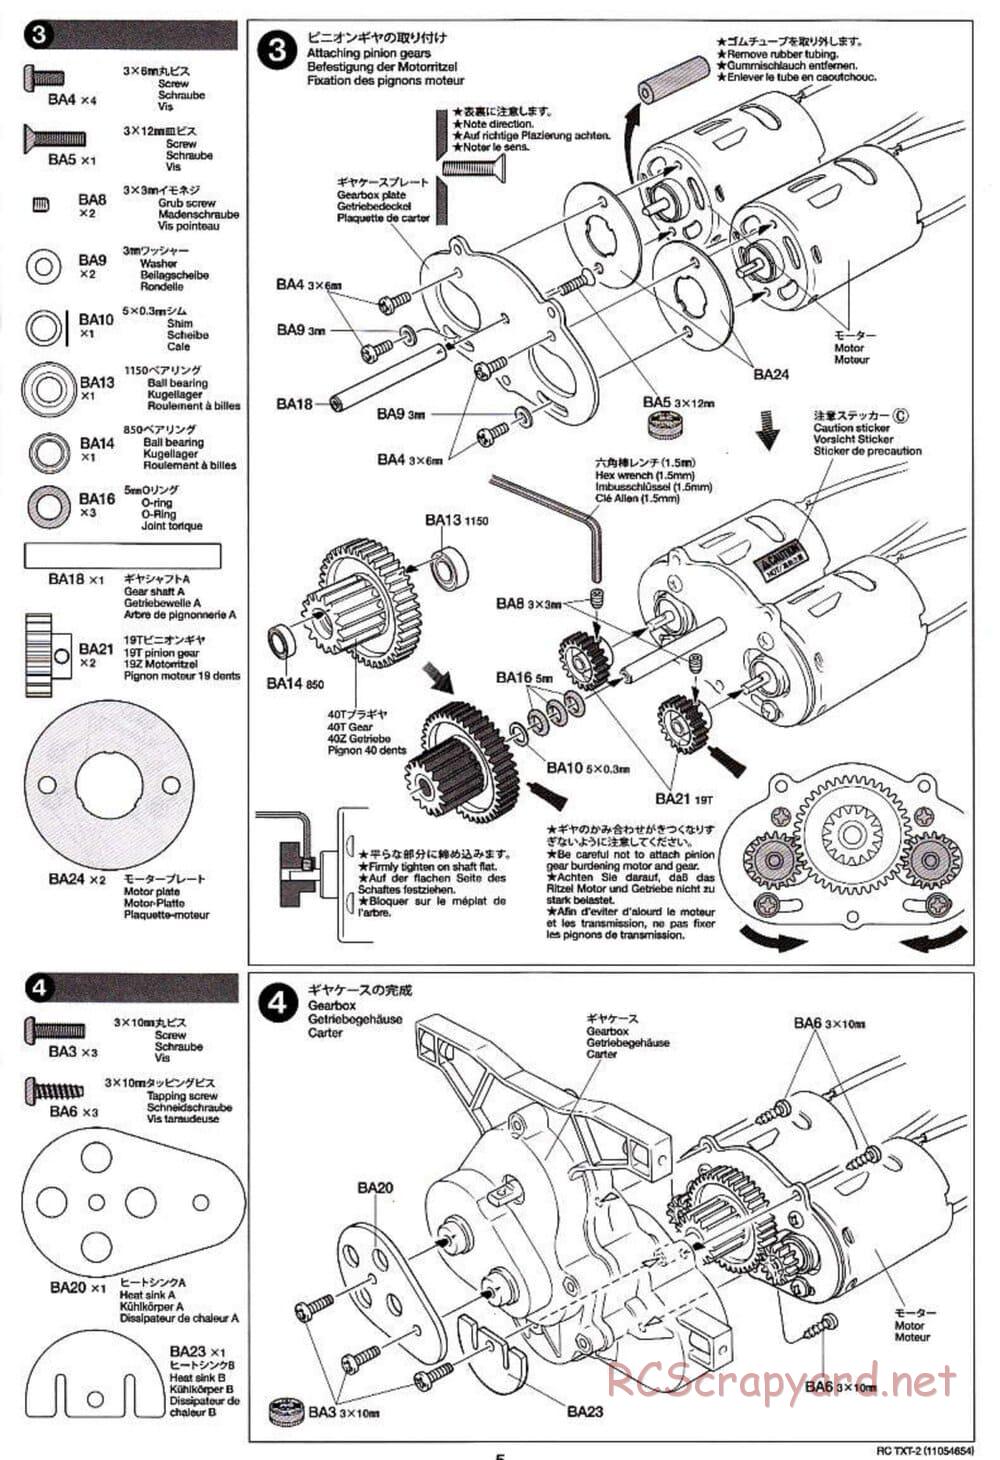 Tamiya - TXT-2 Chassis - Manual - Page 5